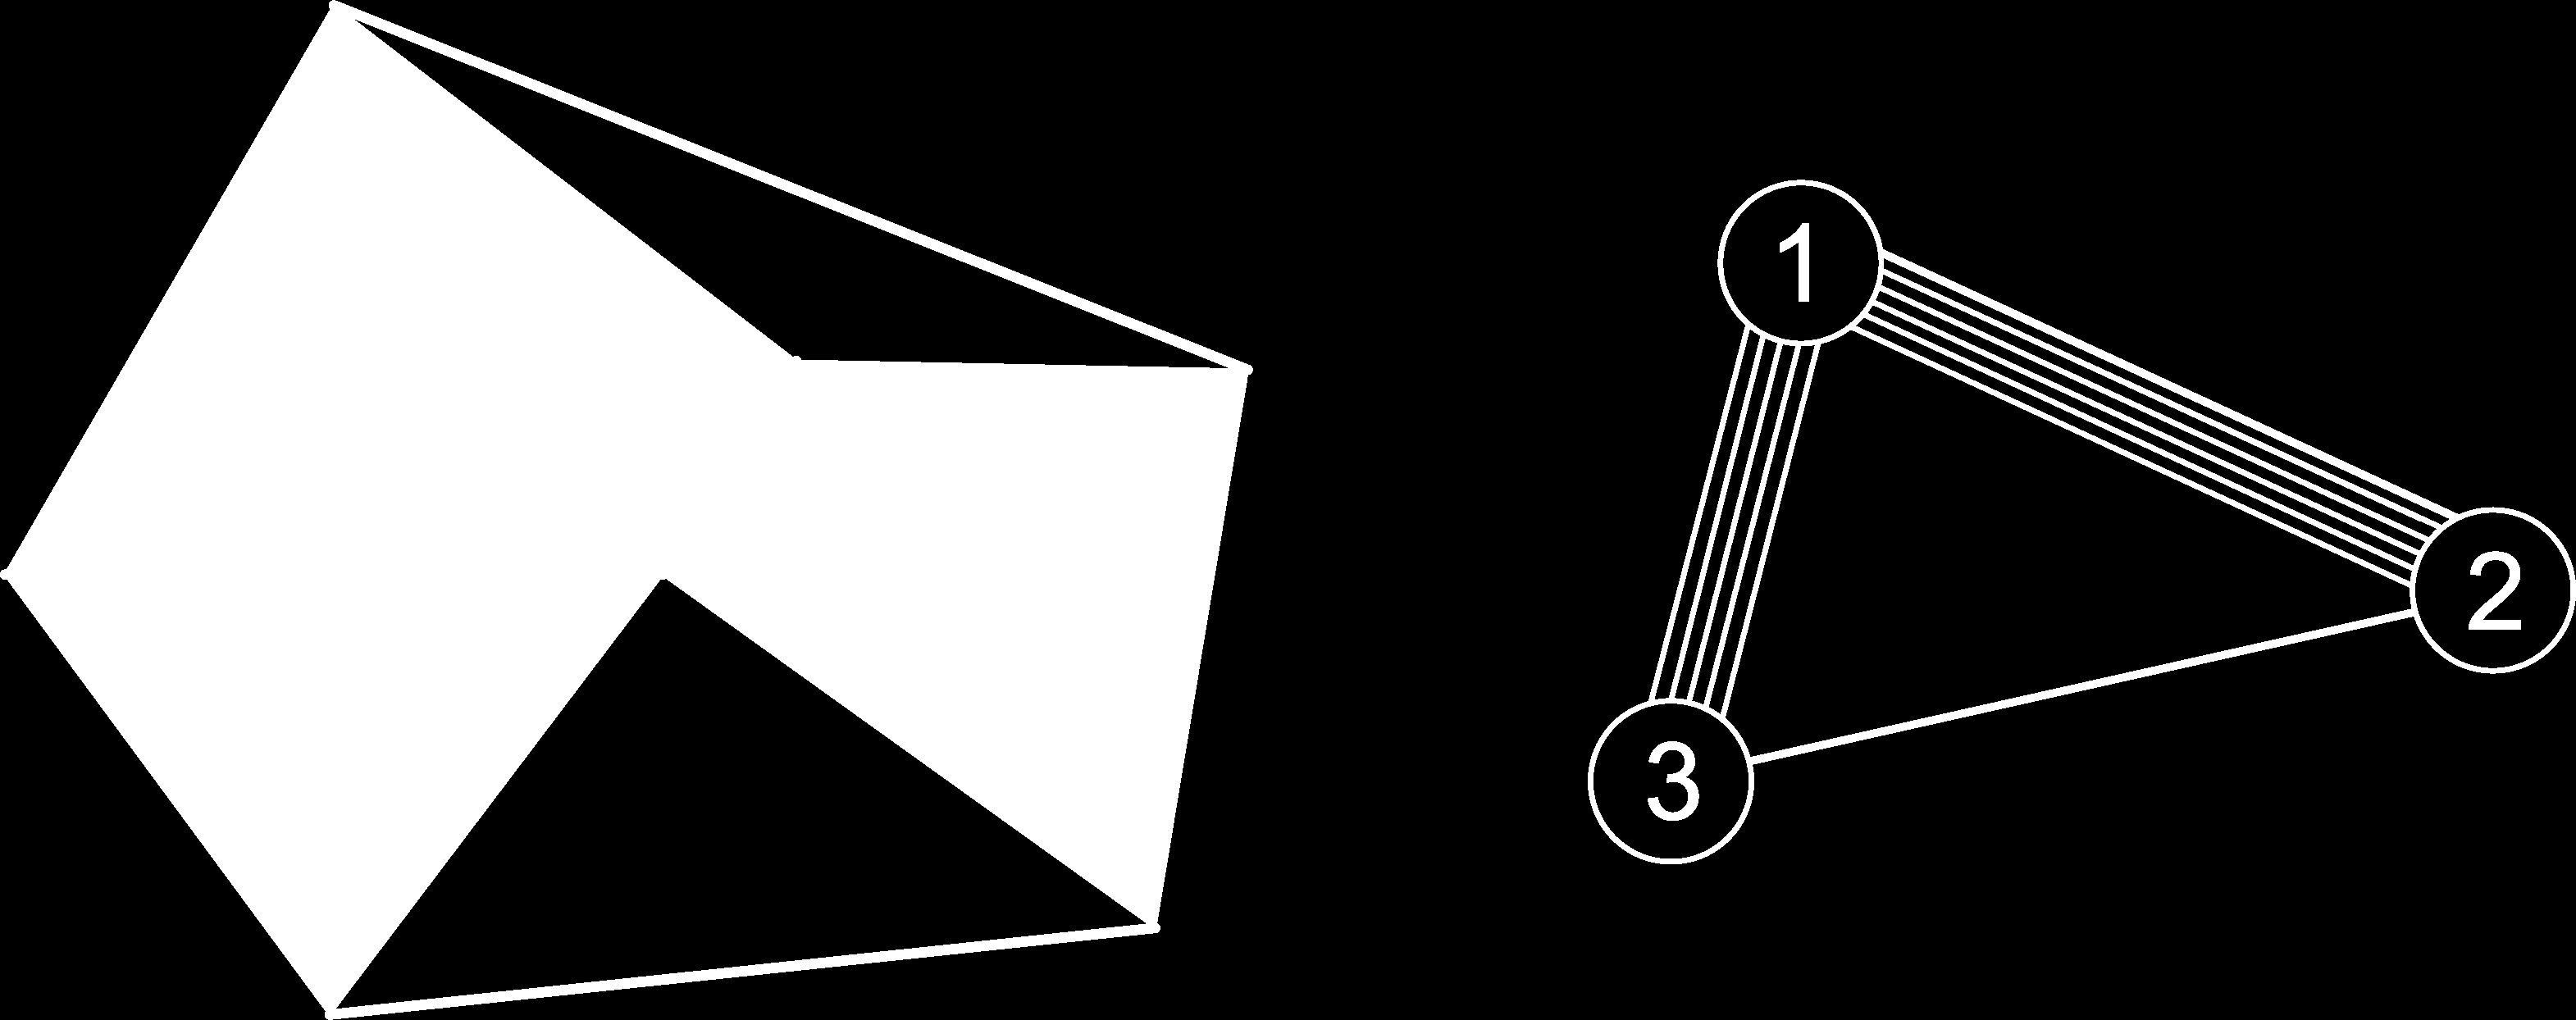 Test-zsanér-rúd szerkezetek karakterizációja (3D) Állítás Test-zsanér-rúd szerkezet csakkor minimálisan generikusan merev, ha a hozzá asszociált multigráf (6,6)-kritikus.